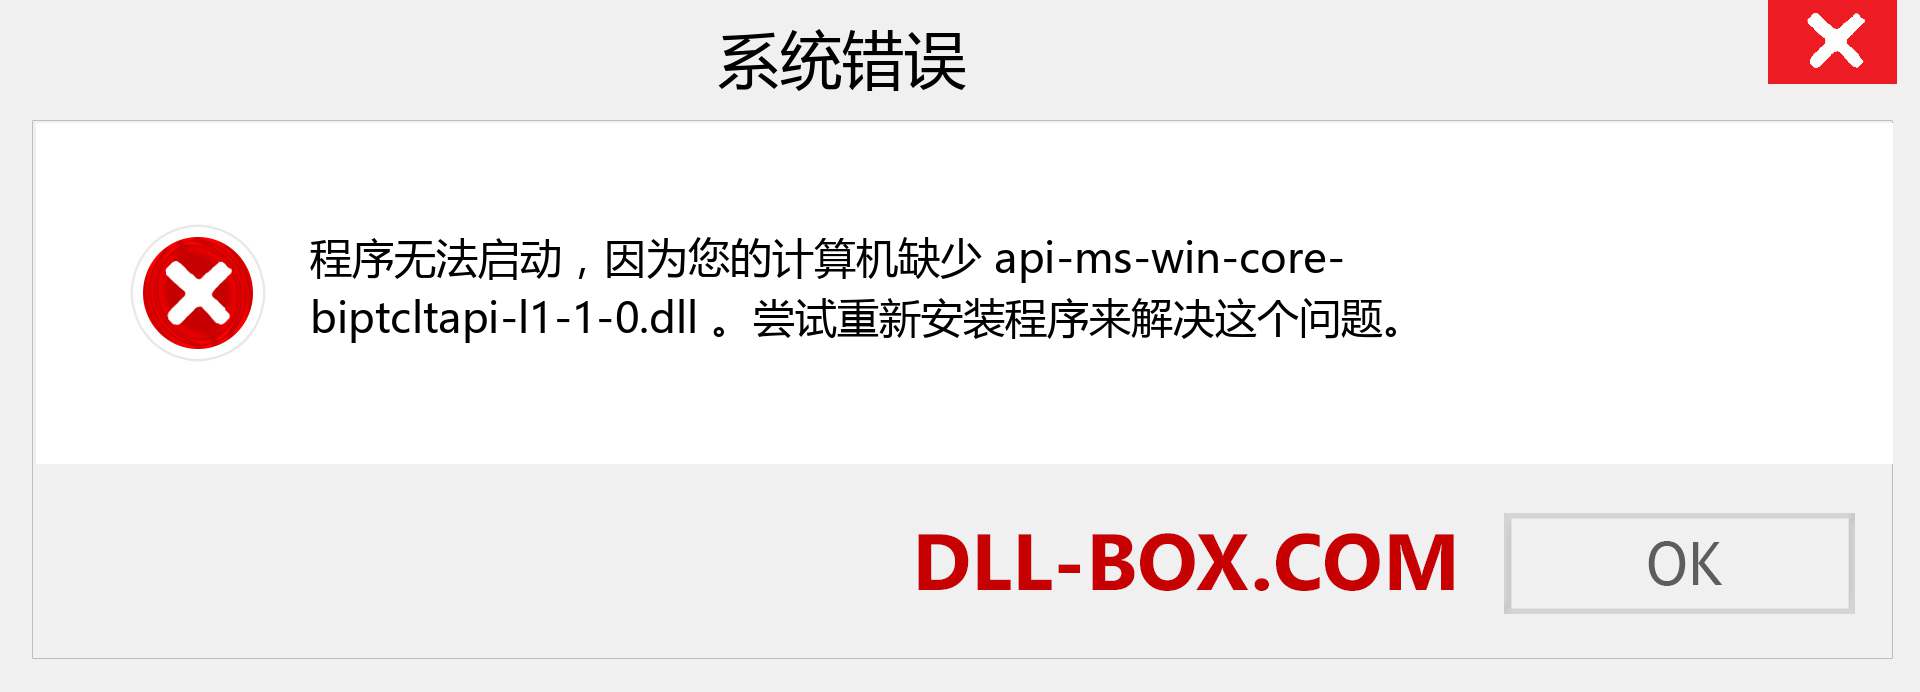 api-ms-win-core-biptcltapi-l1-1-0.dll 文件丢失？。 适用于 Windows 7、8、10 的下载 - 修复 Windows、照片、图像上的 api-ms-win-core-biptcltapi-l1-1-0 dll 丢失错误